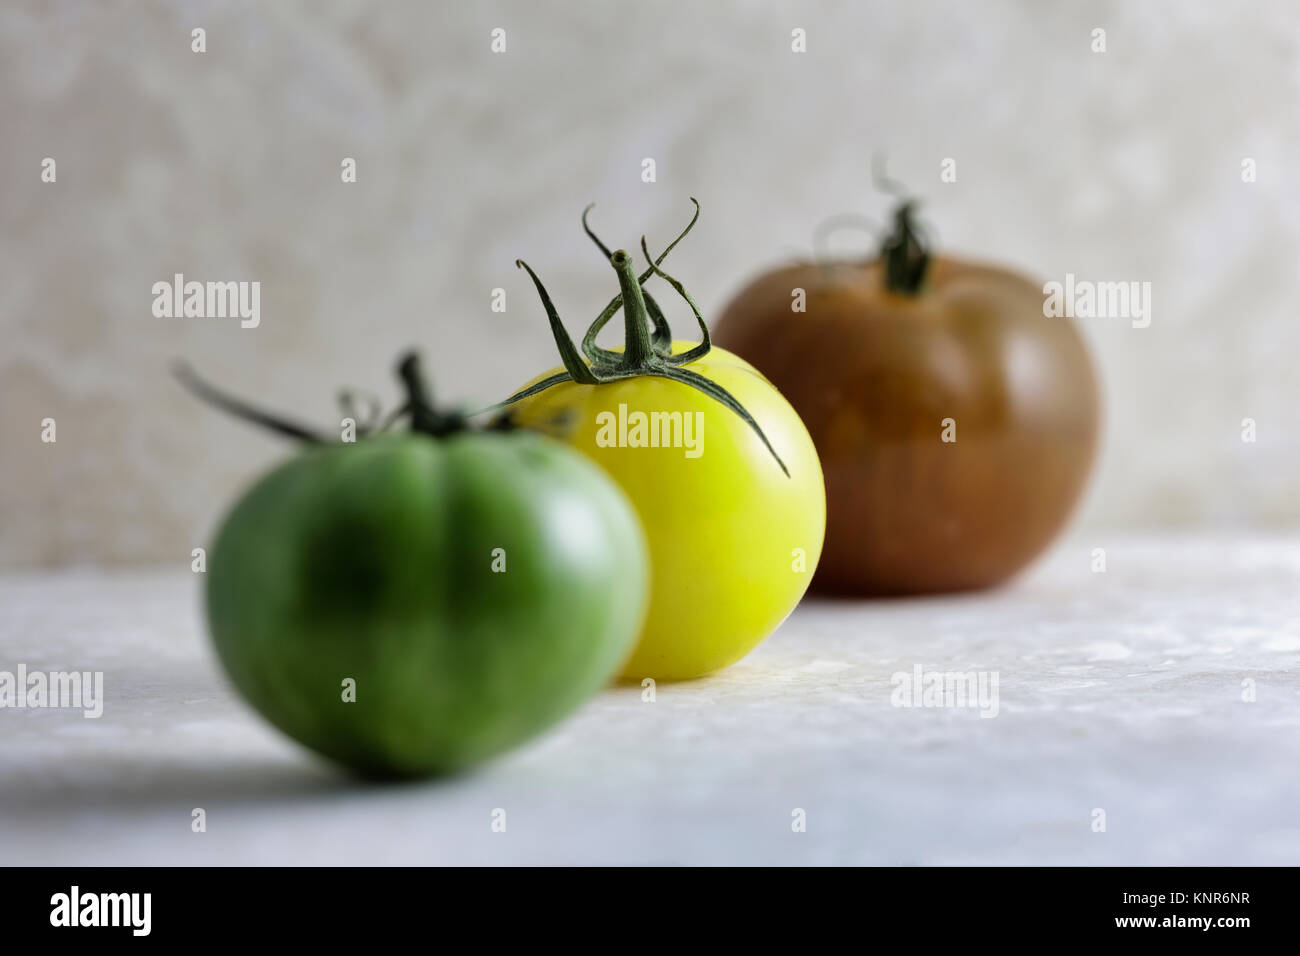 Heritage tomatos of various types Stock Photo